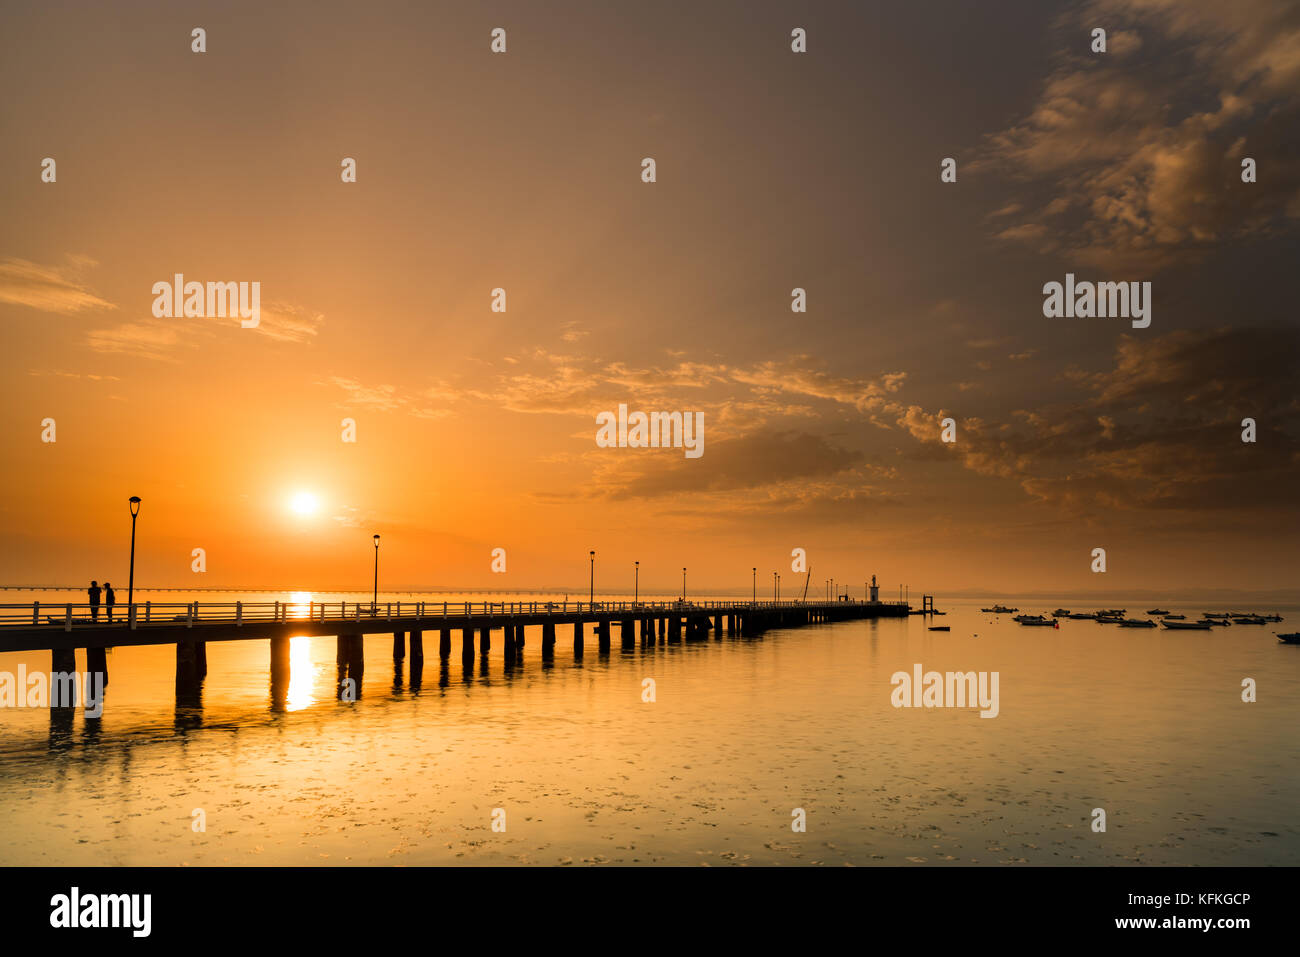 Sonnenuntergang in Alcochete, mit einem Pier bis zum Horizont. Silhouetten von zwei Menschen reden. Stockfoto